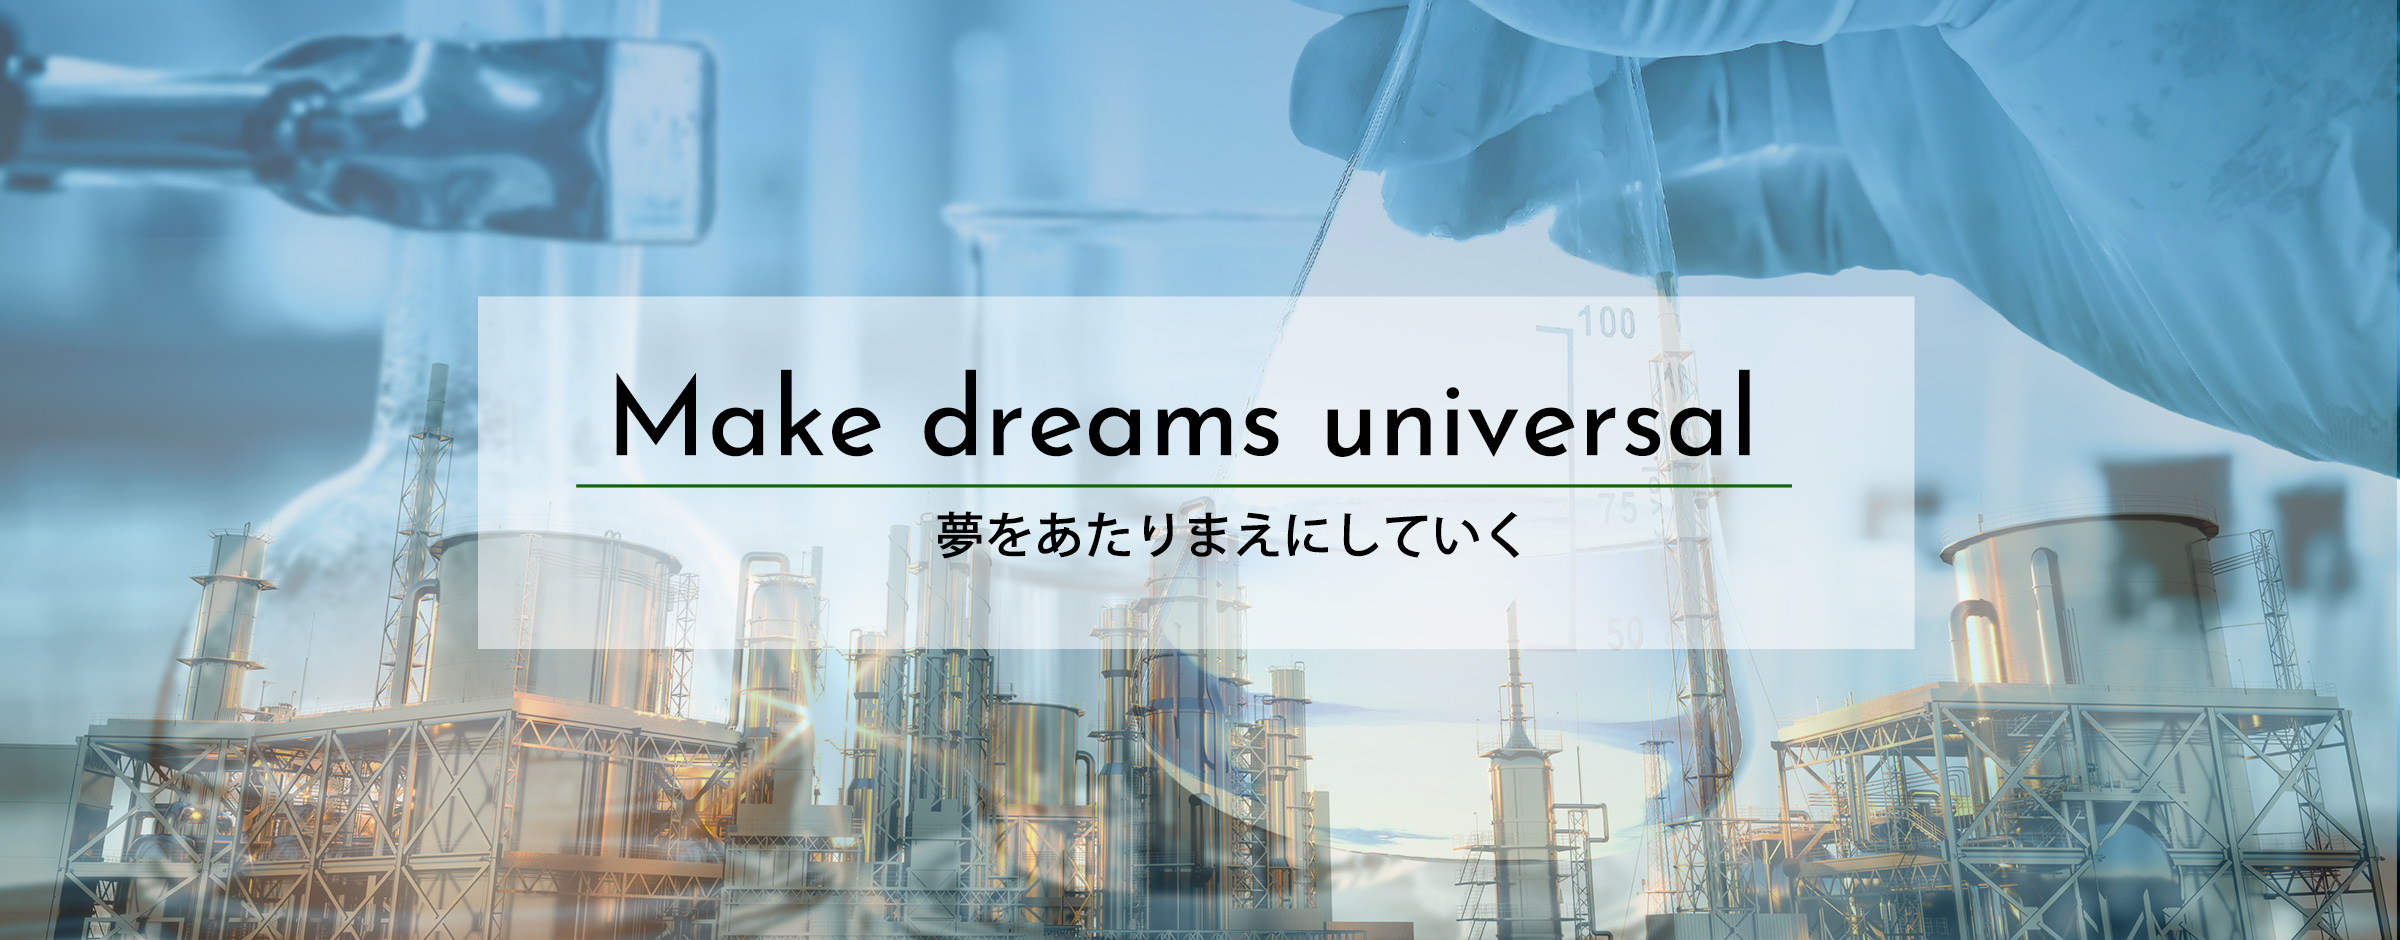 Make dreams universal 夢をあたりまえにしていく